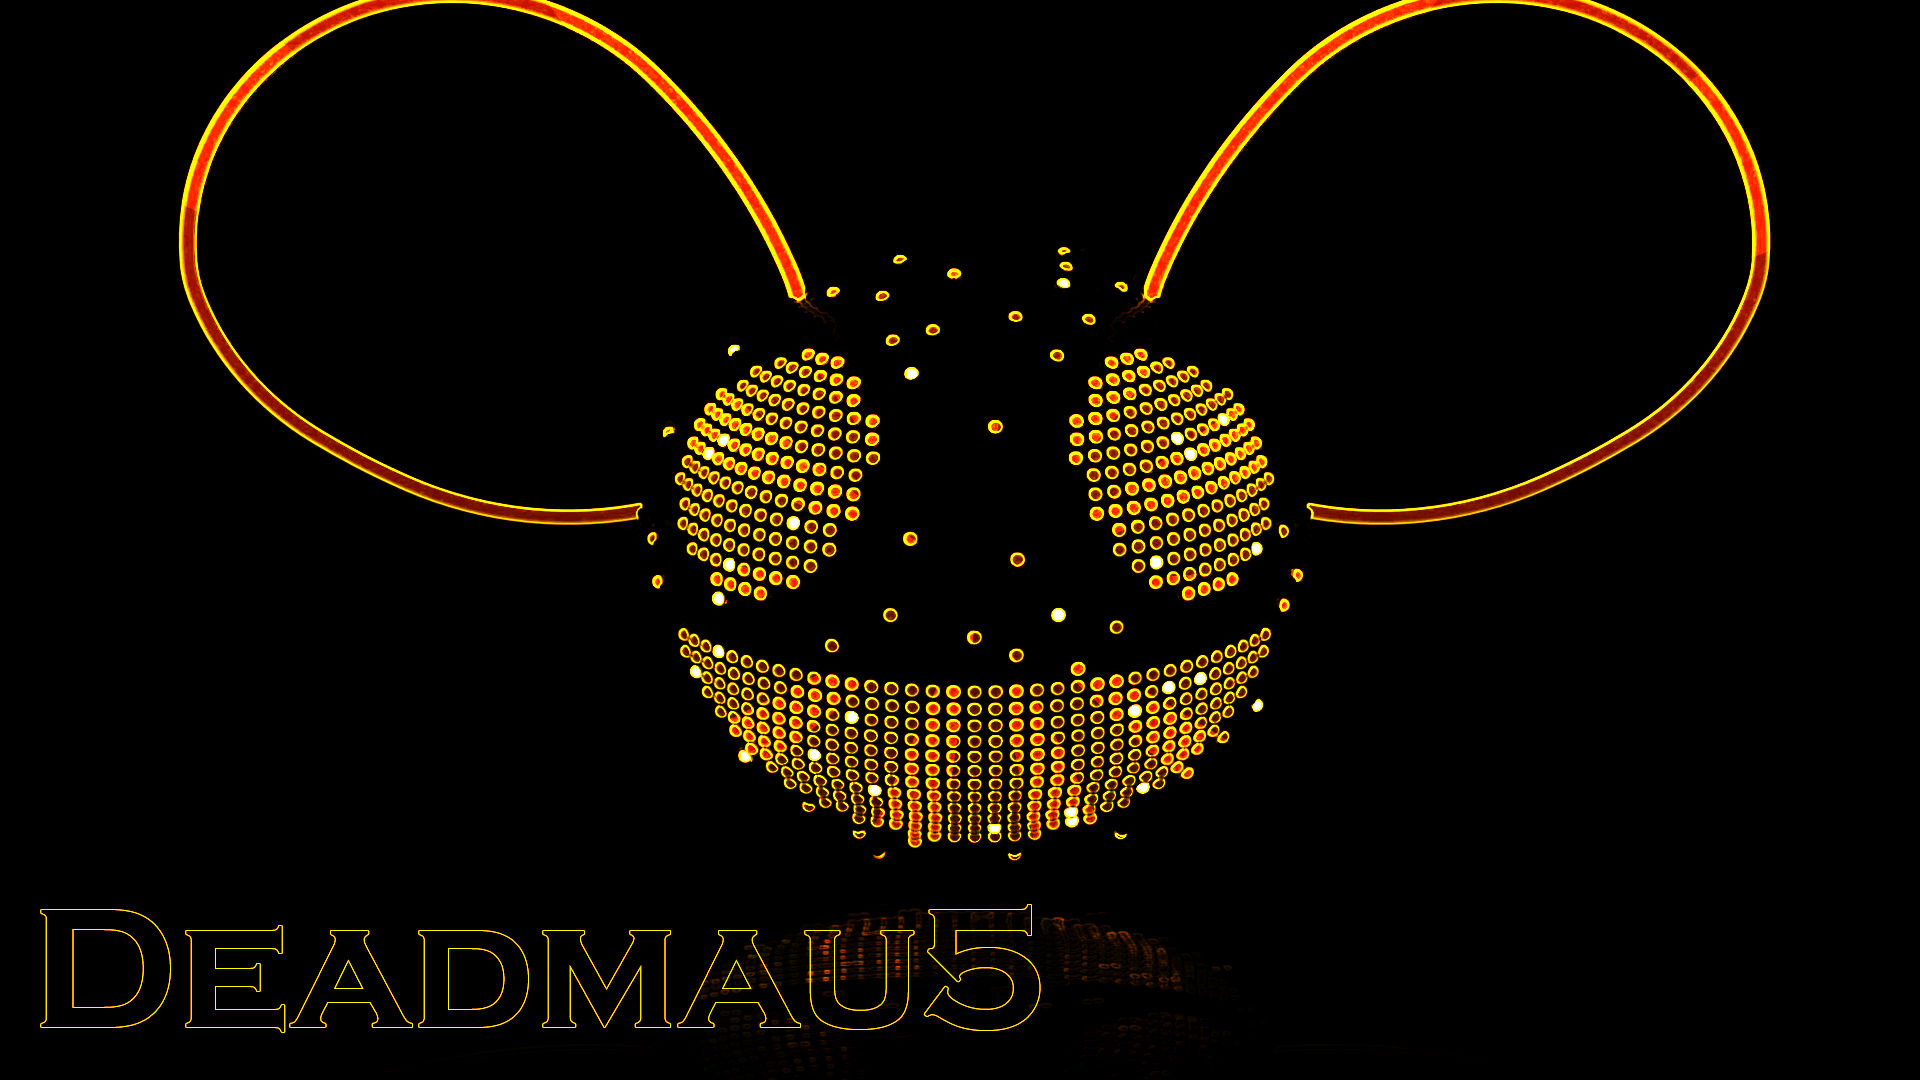 Fuentes De Informaci N Deadmau5 HD Wallpaper X